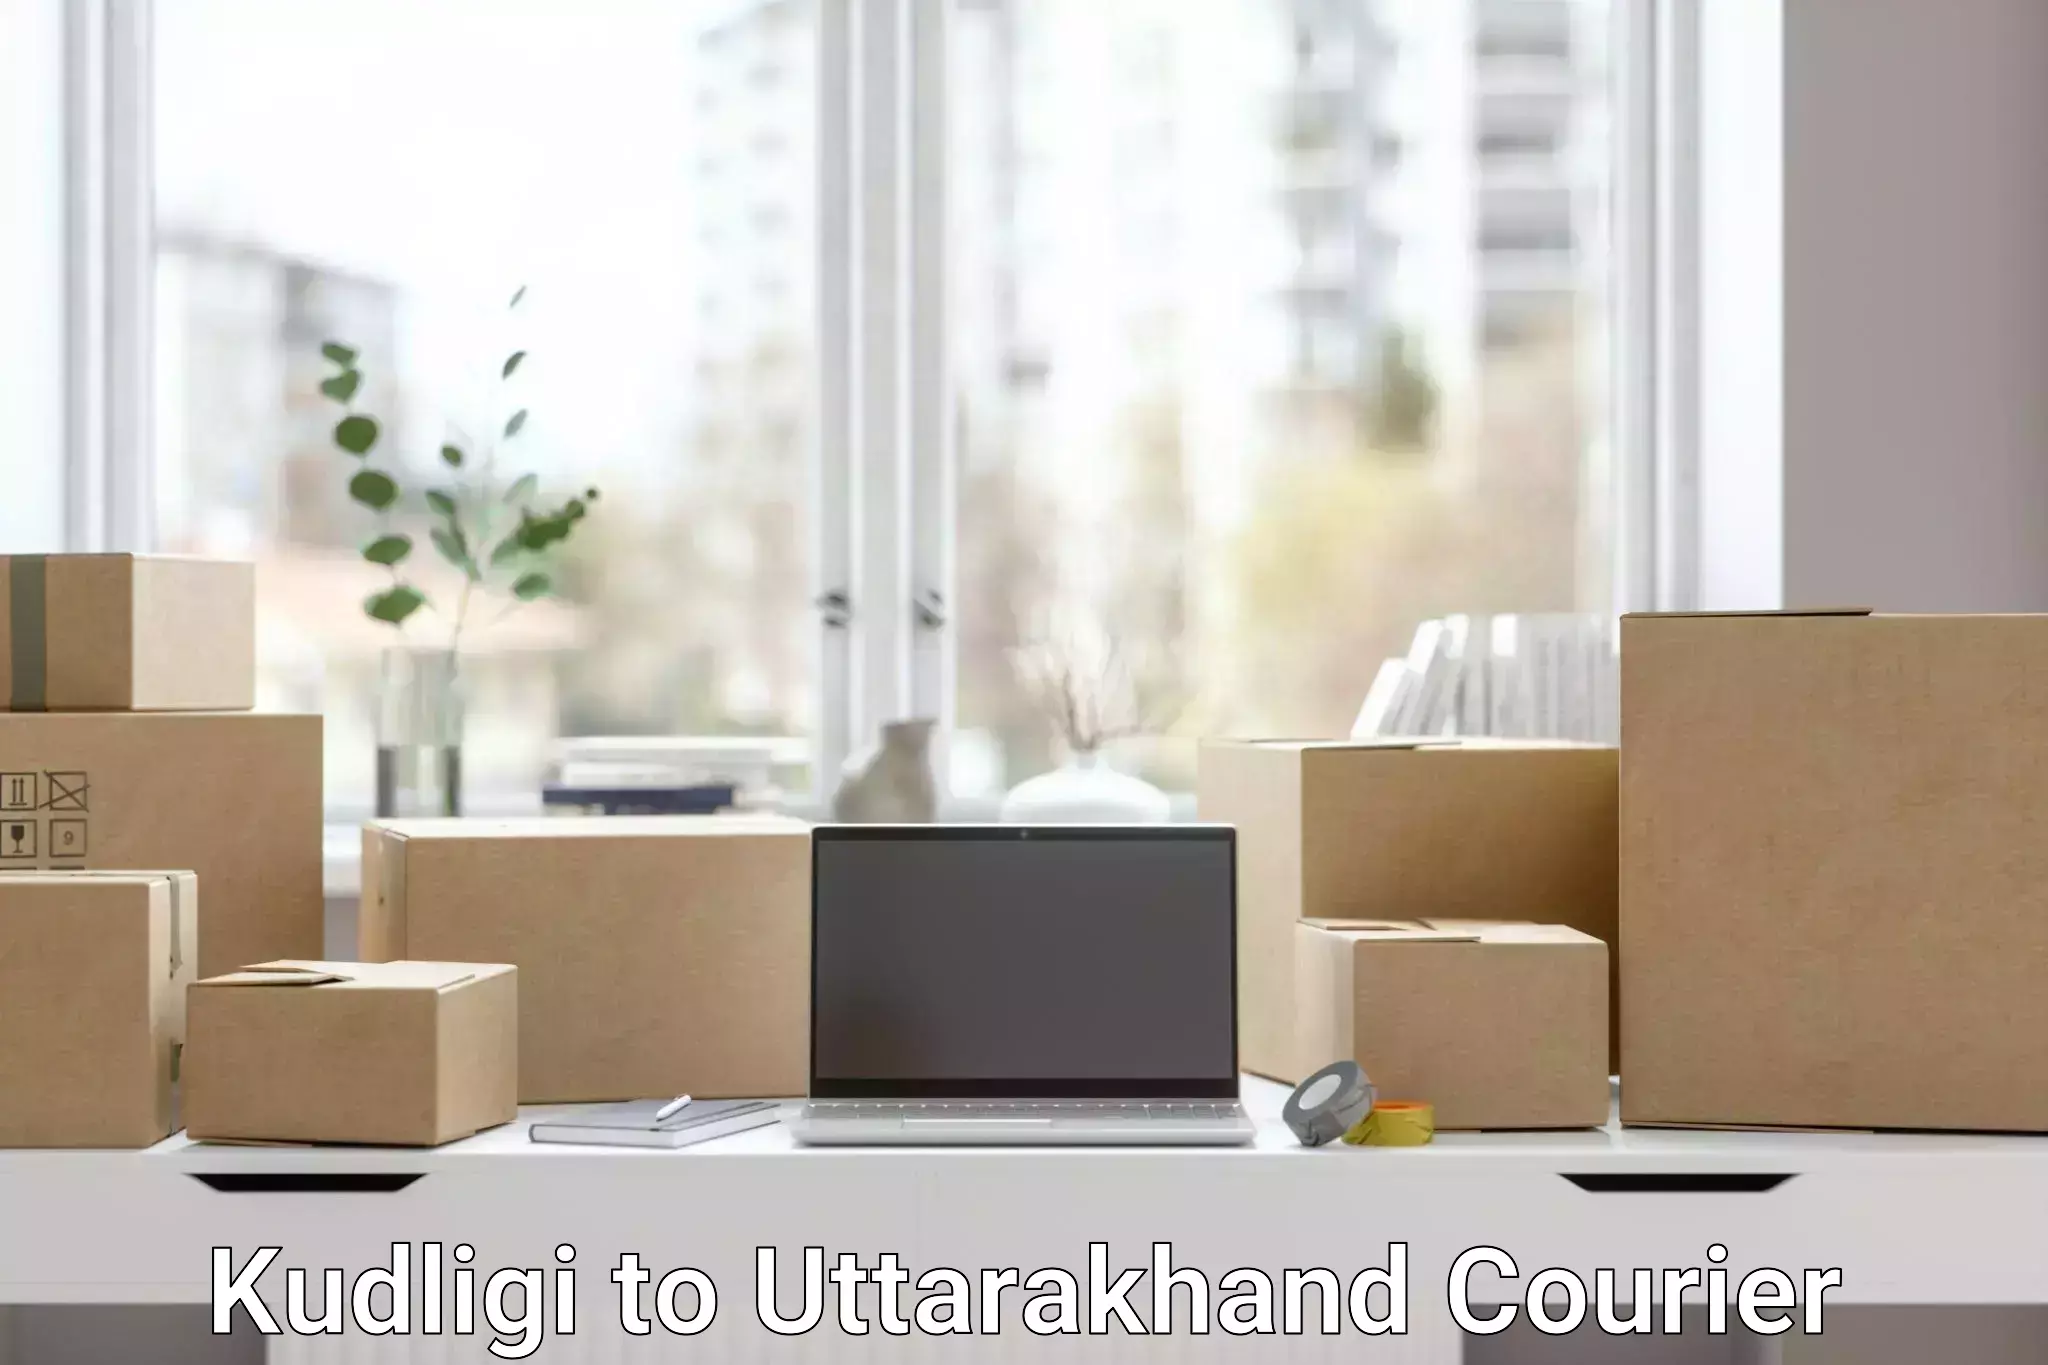 Residential courier service Kudligi to Uttarakhand